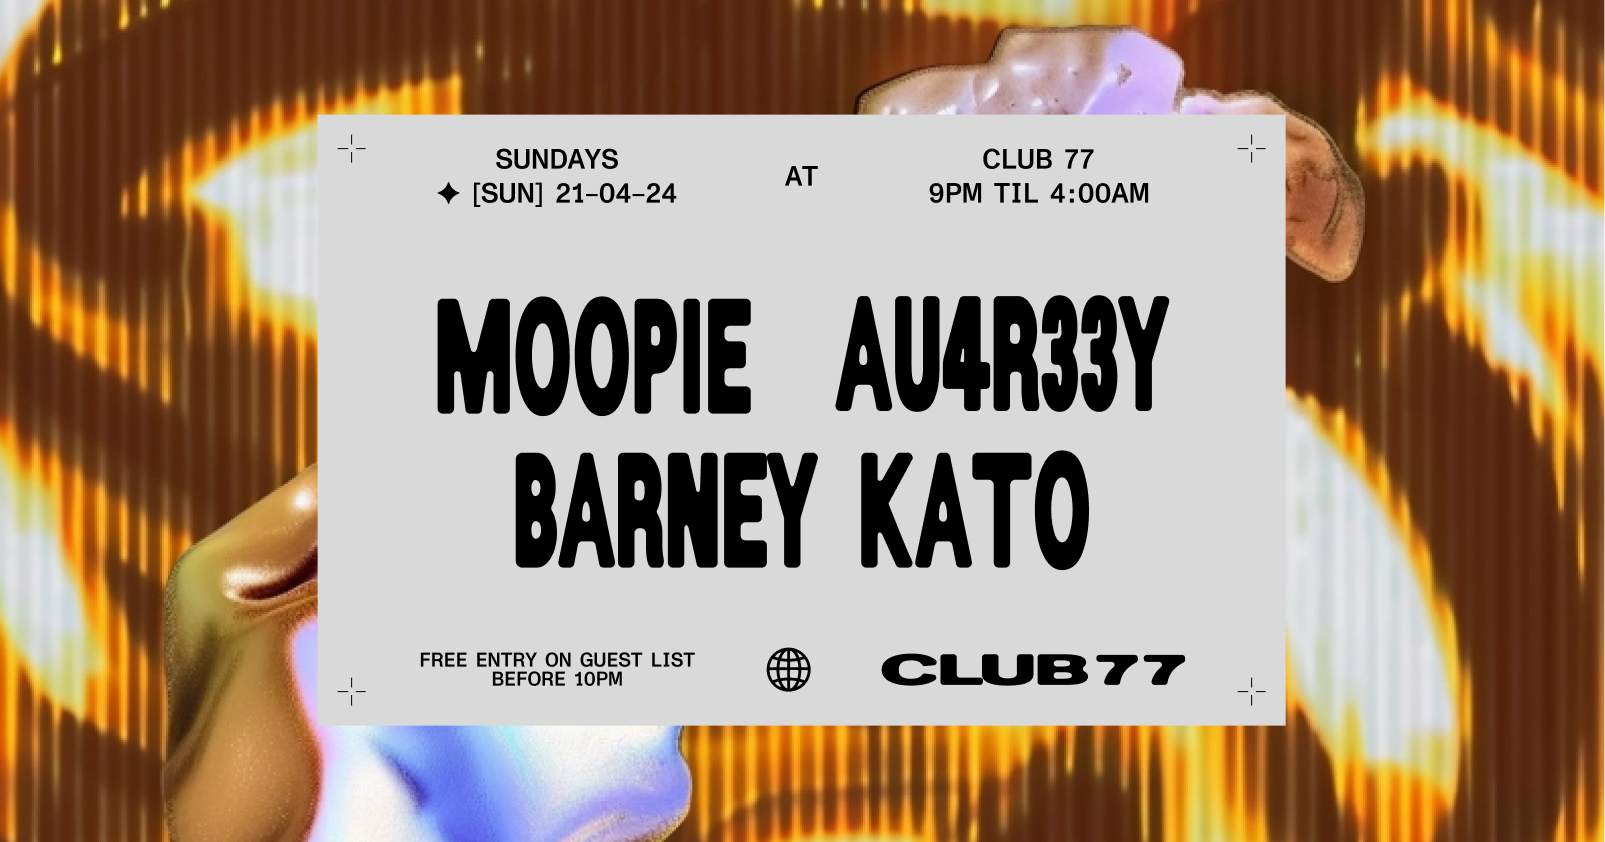 Sundays at 77: Moopie, au4r33y, Barney Kato - Página frontal